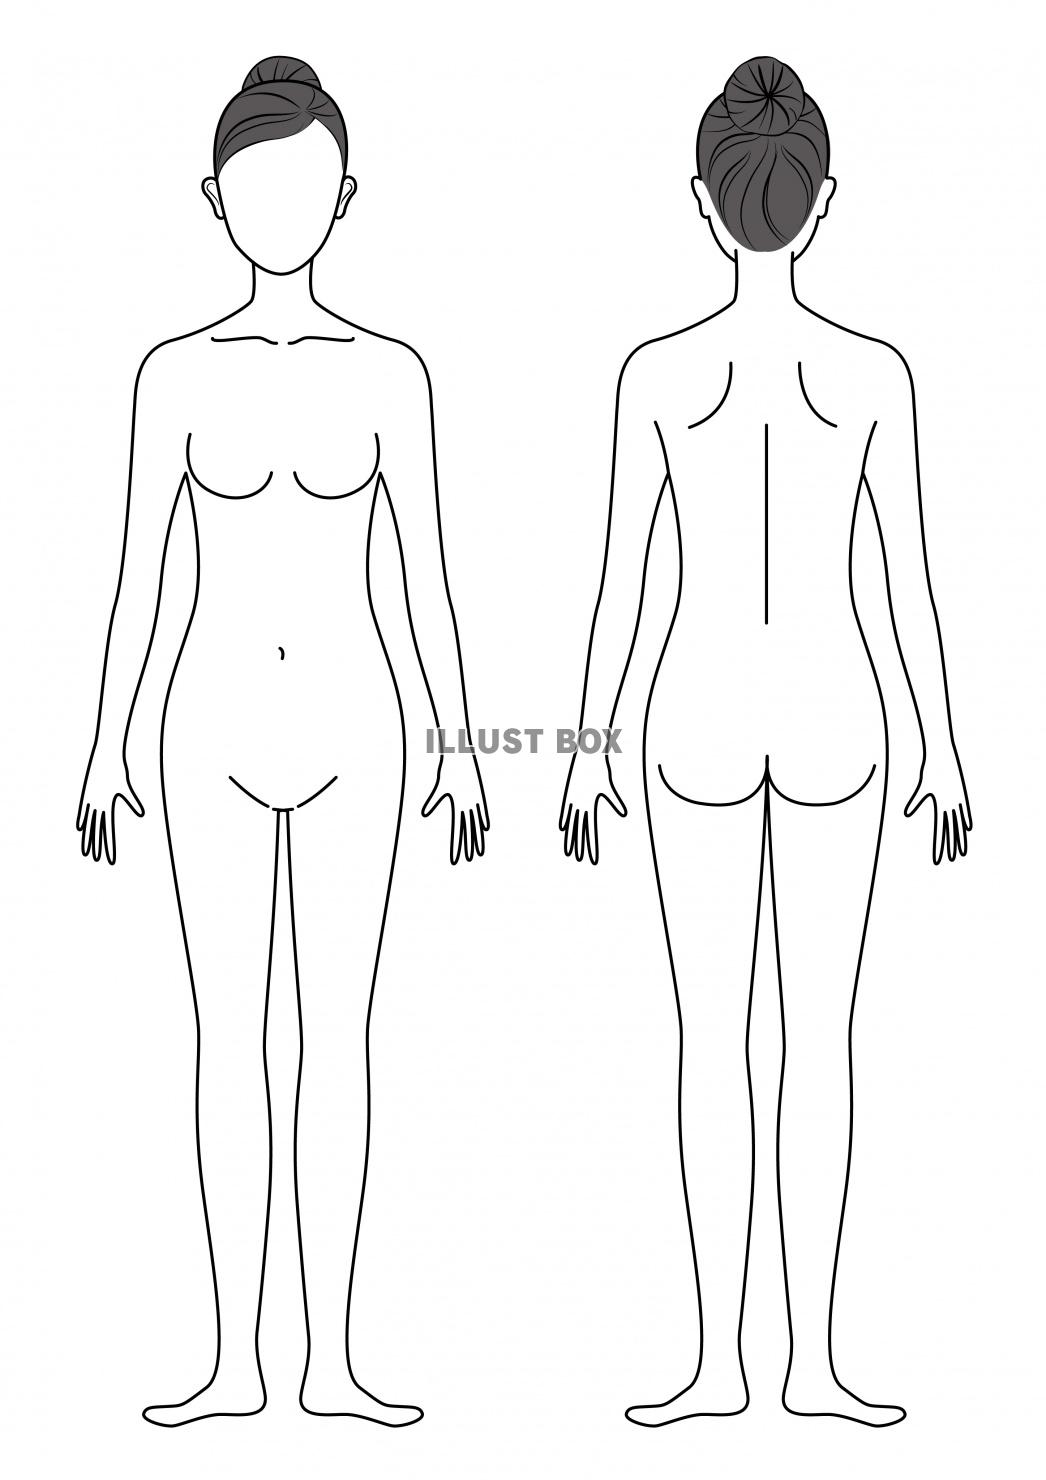 無料イラスト 女性の身体イラスト 線画ラインバージョン